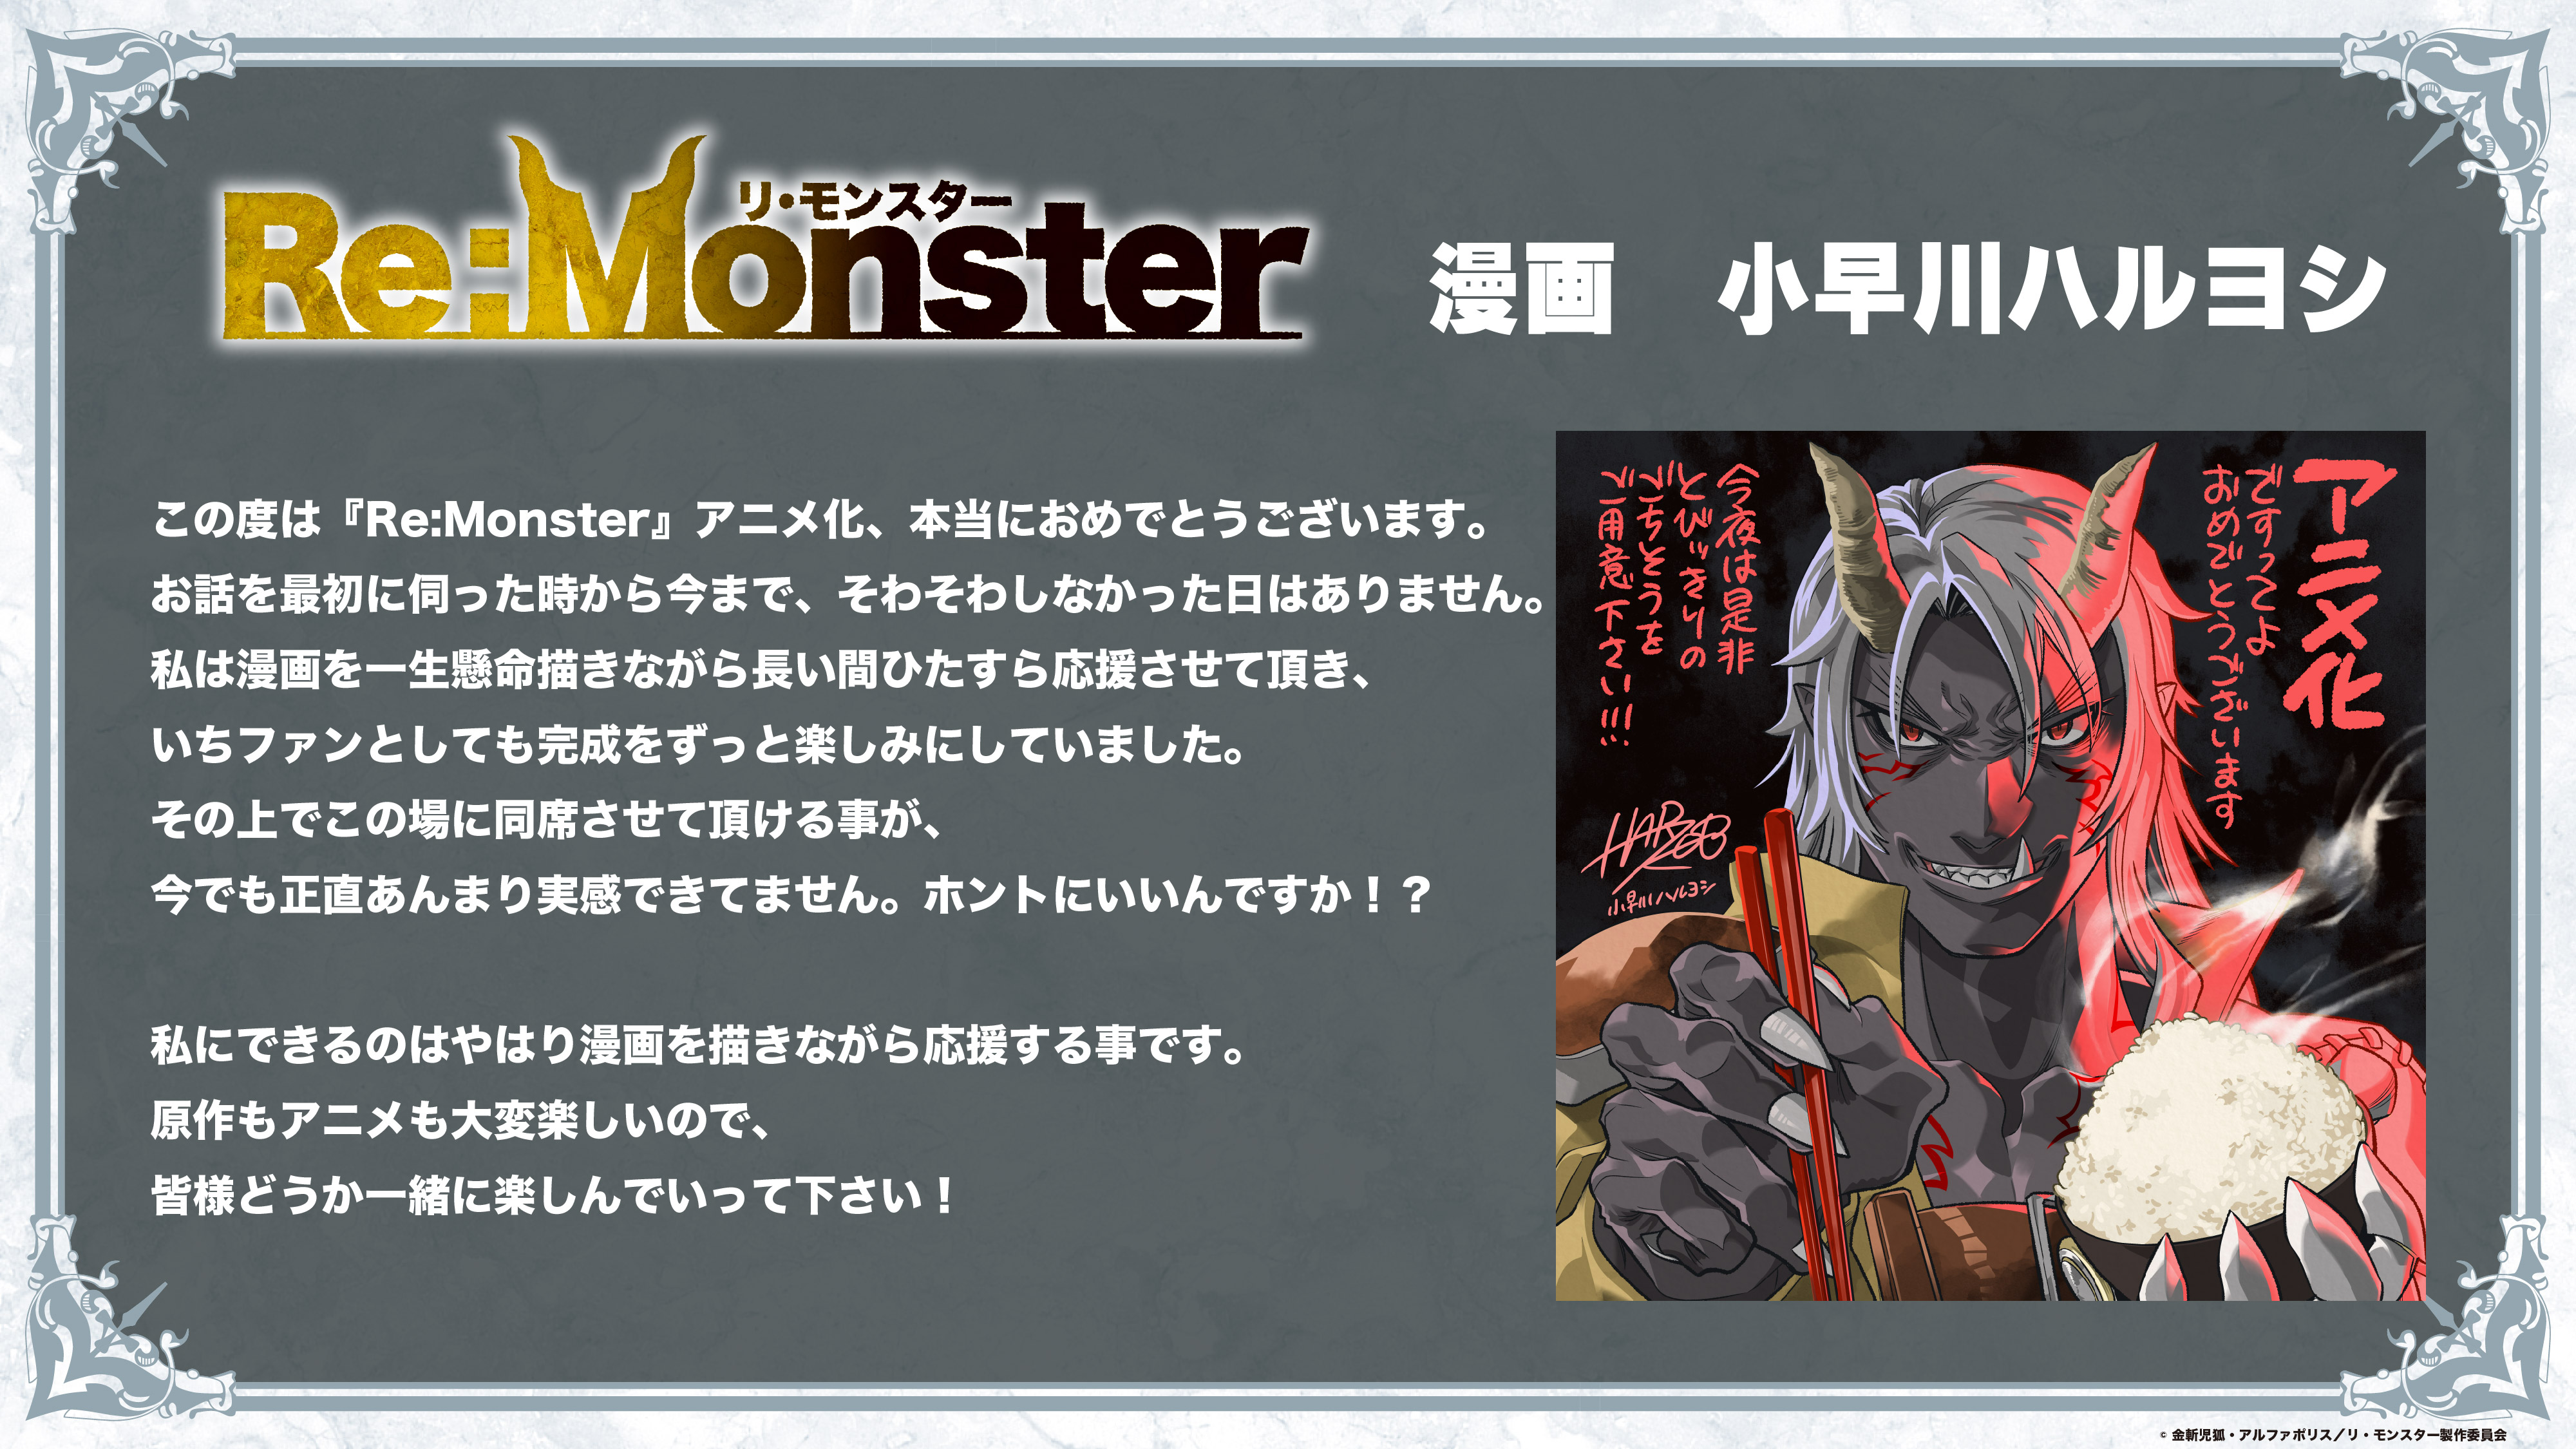 Re:Monster tem adaptação em anime anunciada - Crunchyroll Notícias